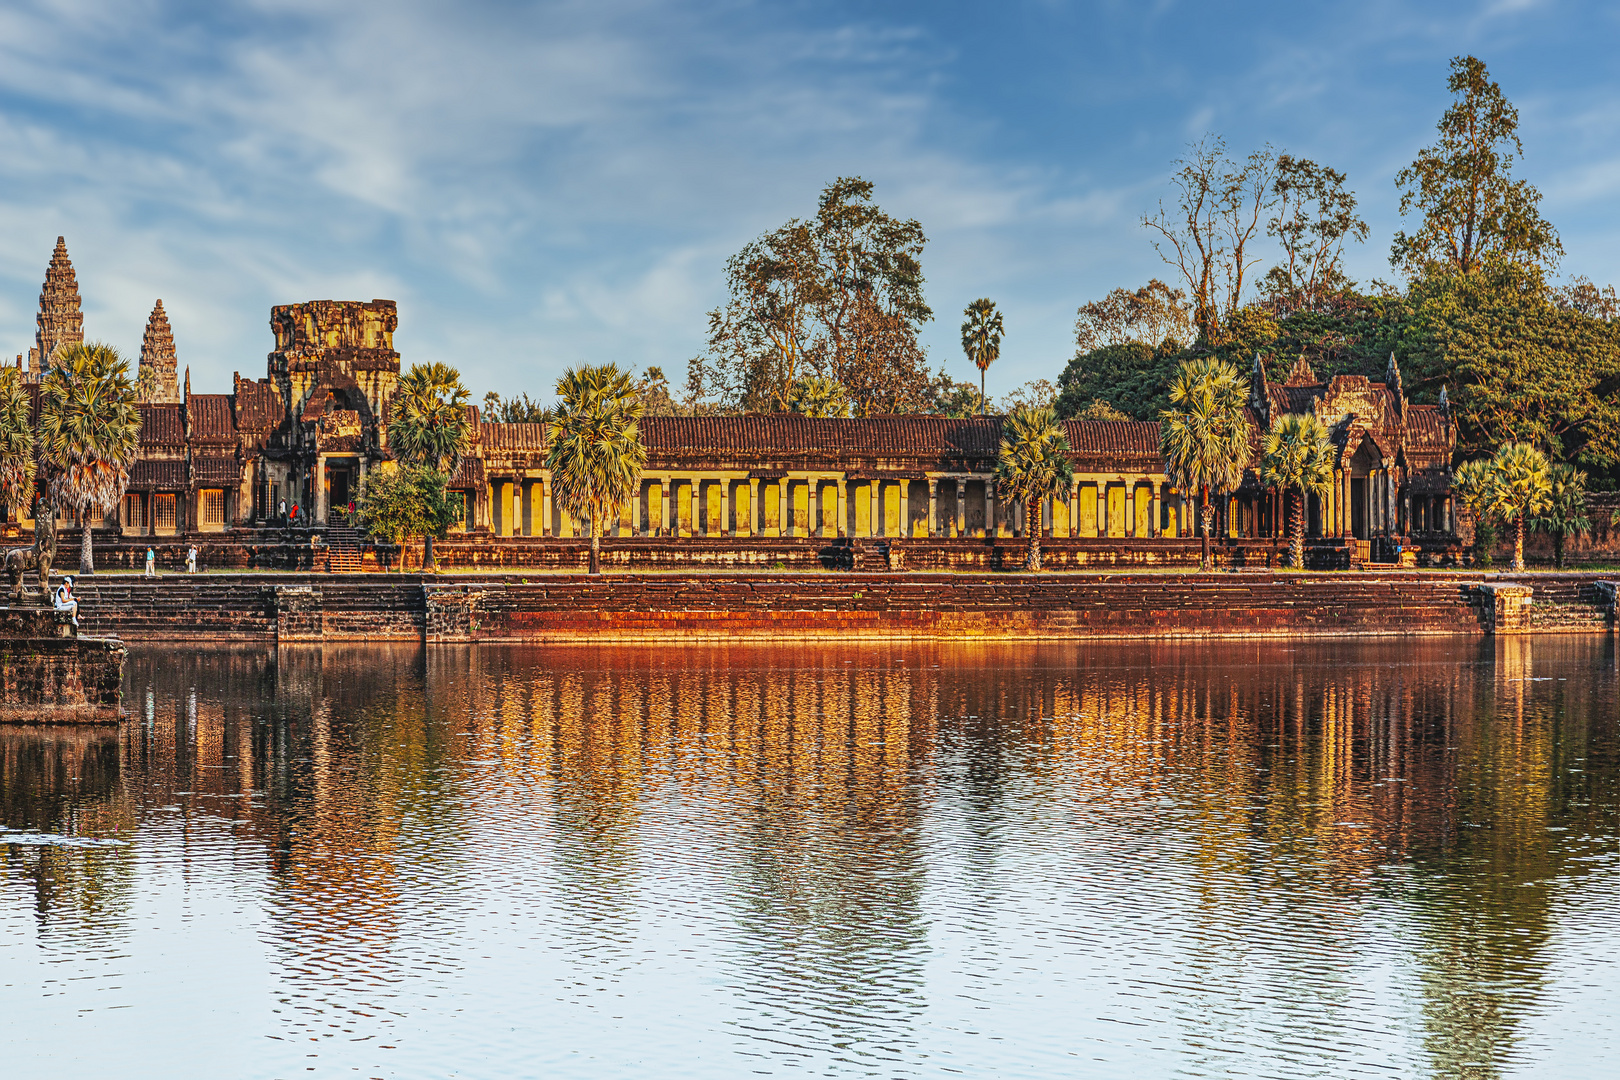 Teil der Umfassungsmauer von Angkor Wat